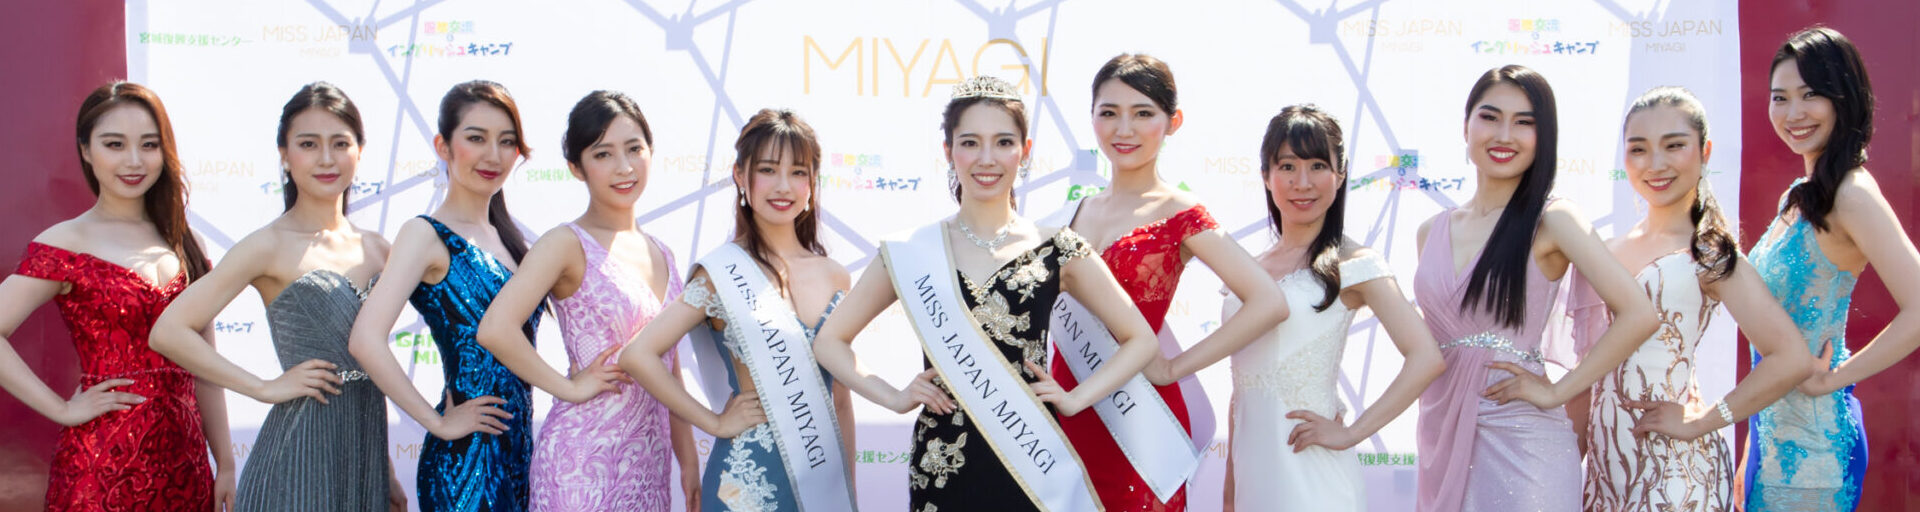 2021 ミス・ジャパン宮城 -2021 MISS JAPAN MIYAGI-